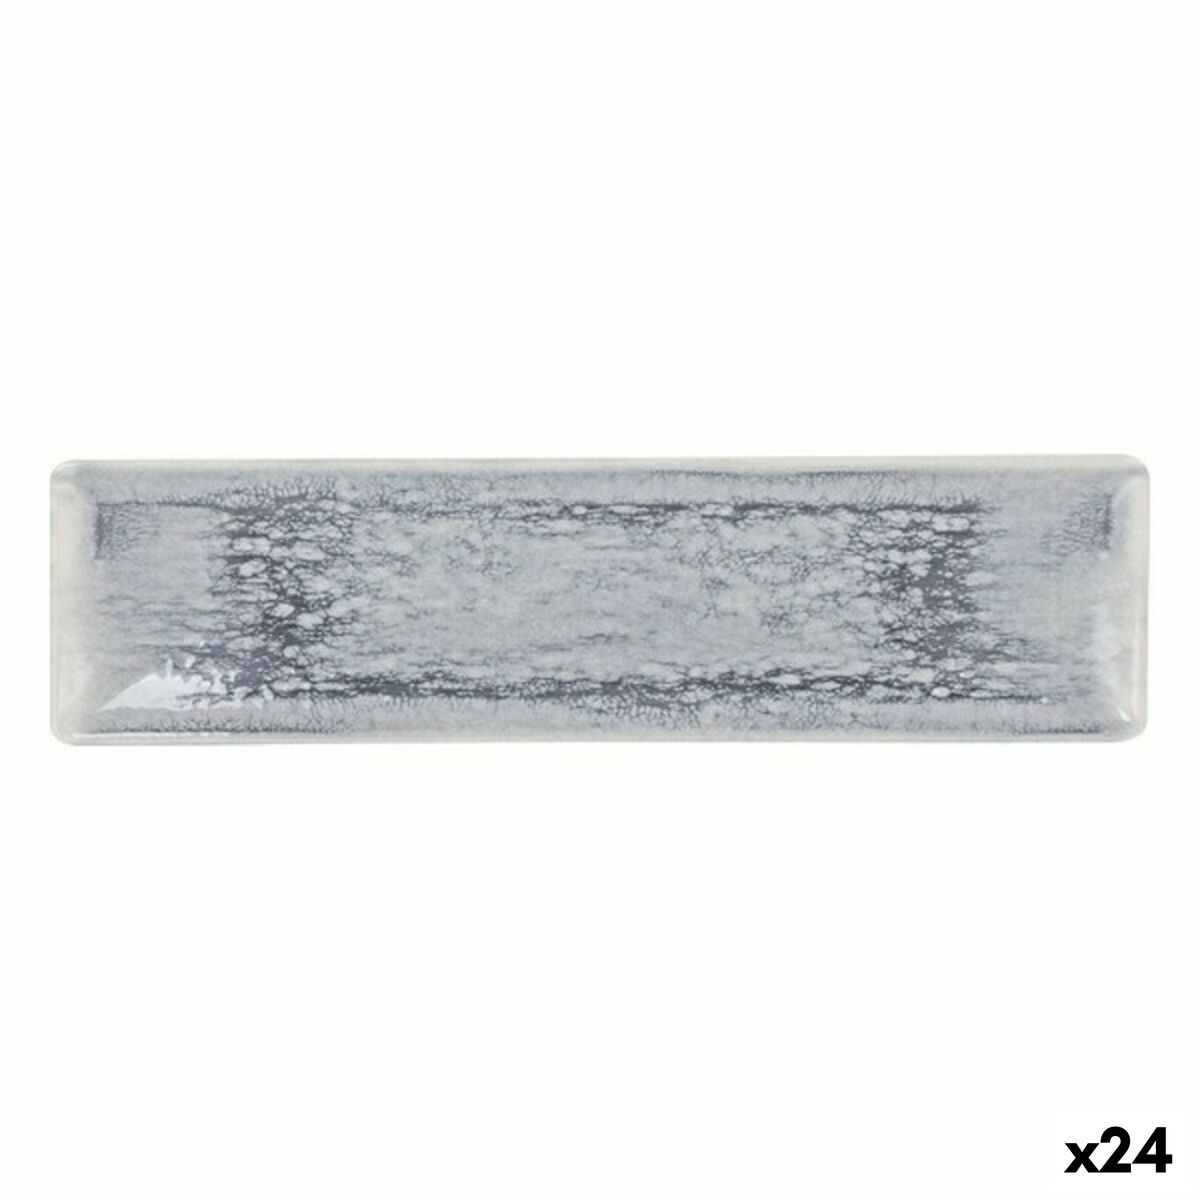 Plat à Gratin La Mediterránea Adhara Rectangulaire 30 x 8 x 2cm (24 Unités) (30 x 8 cm)